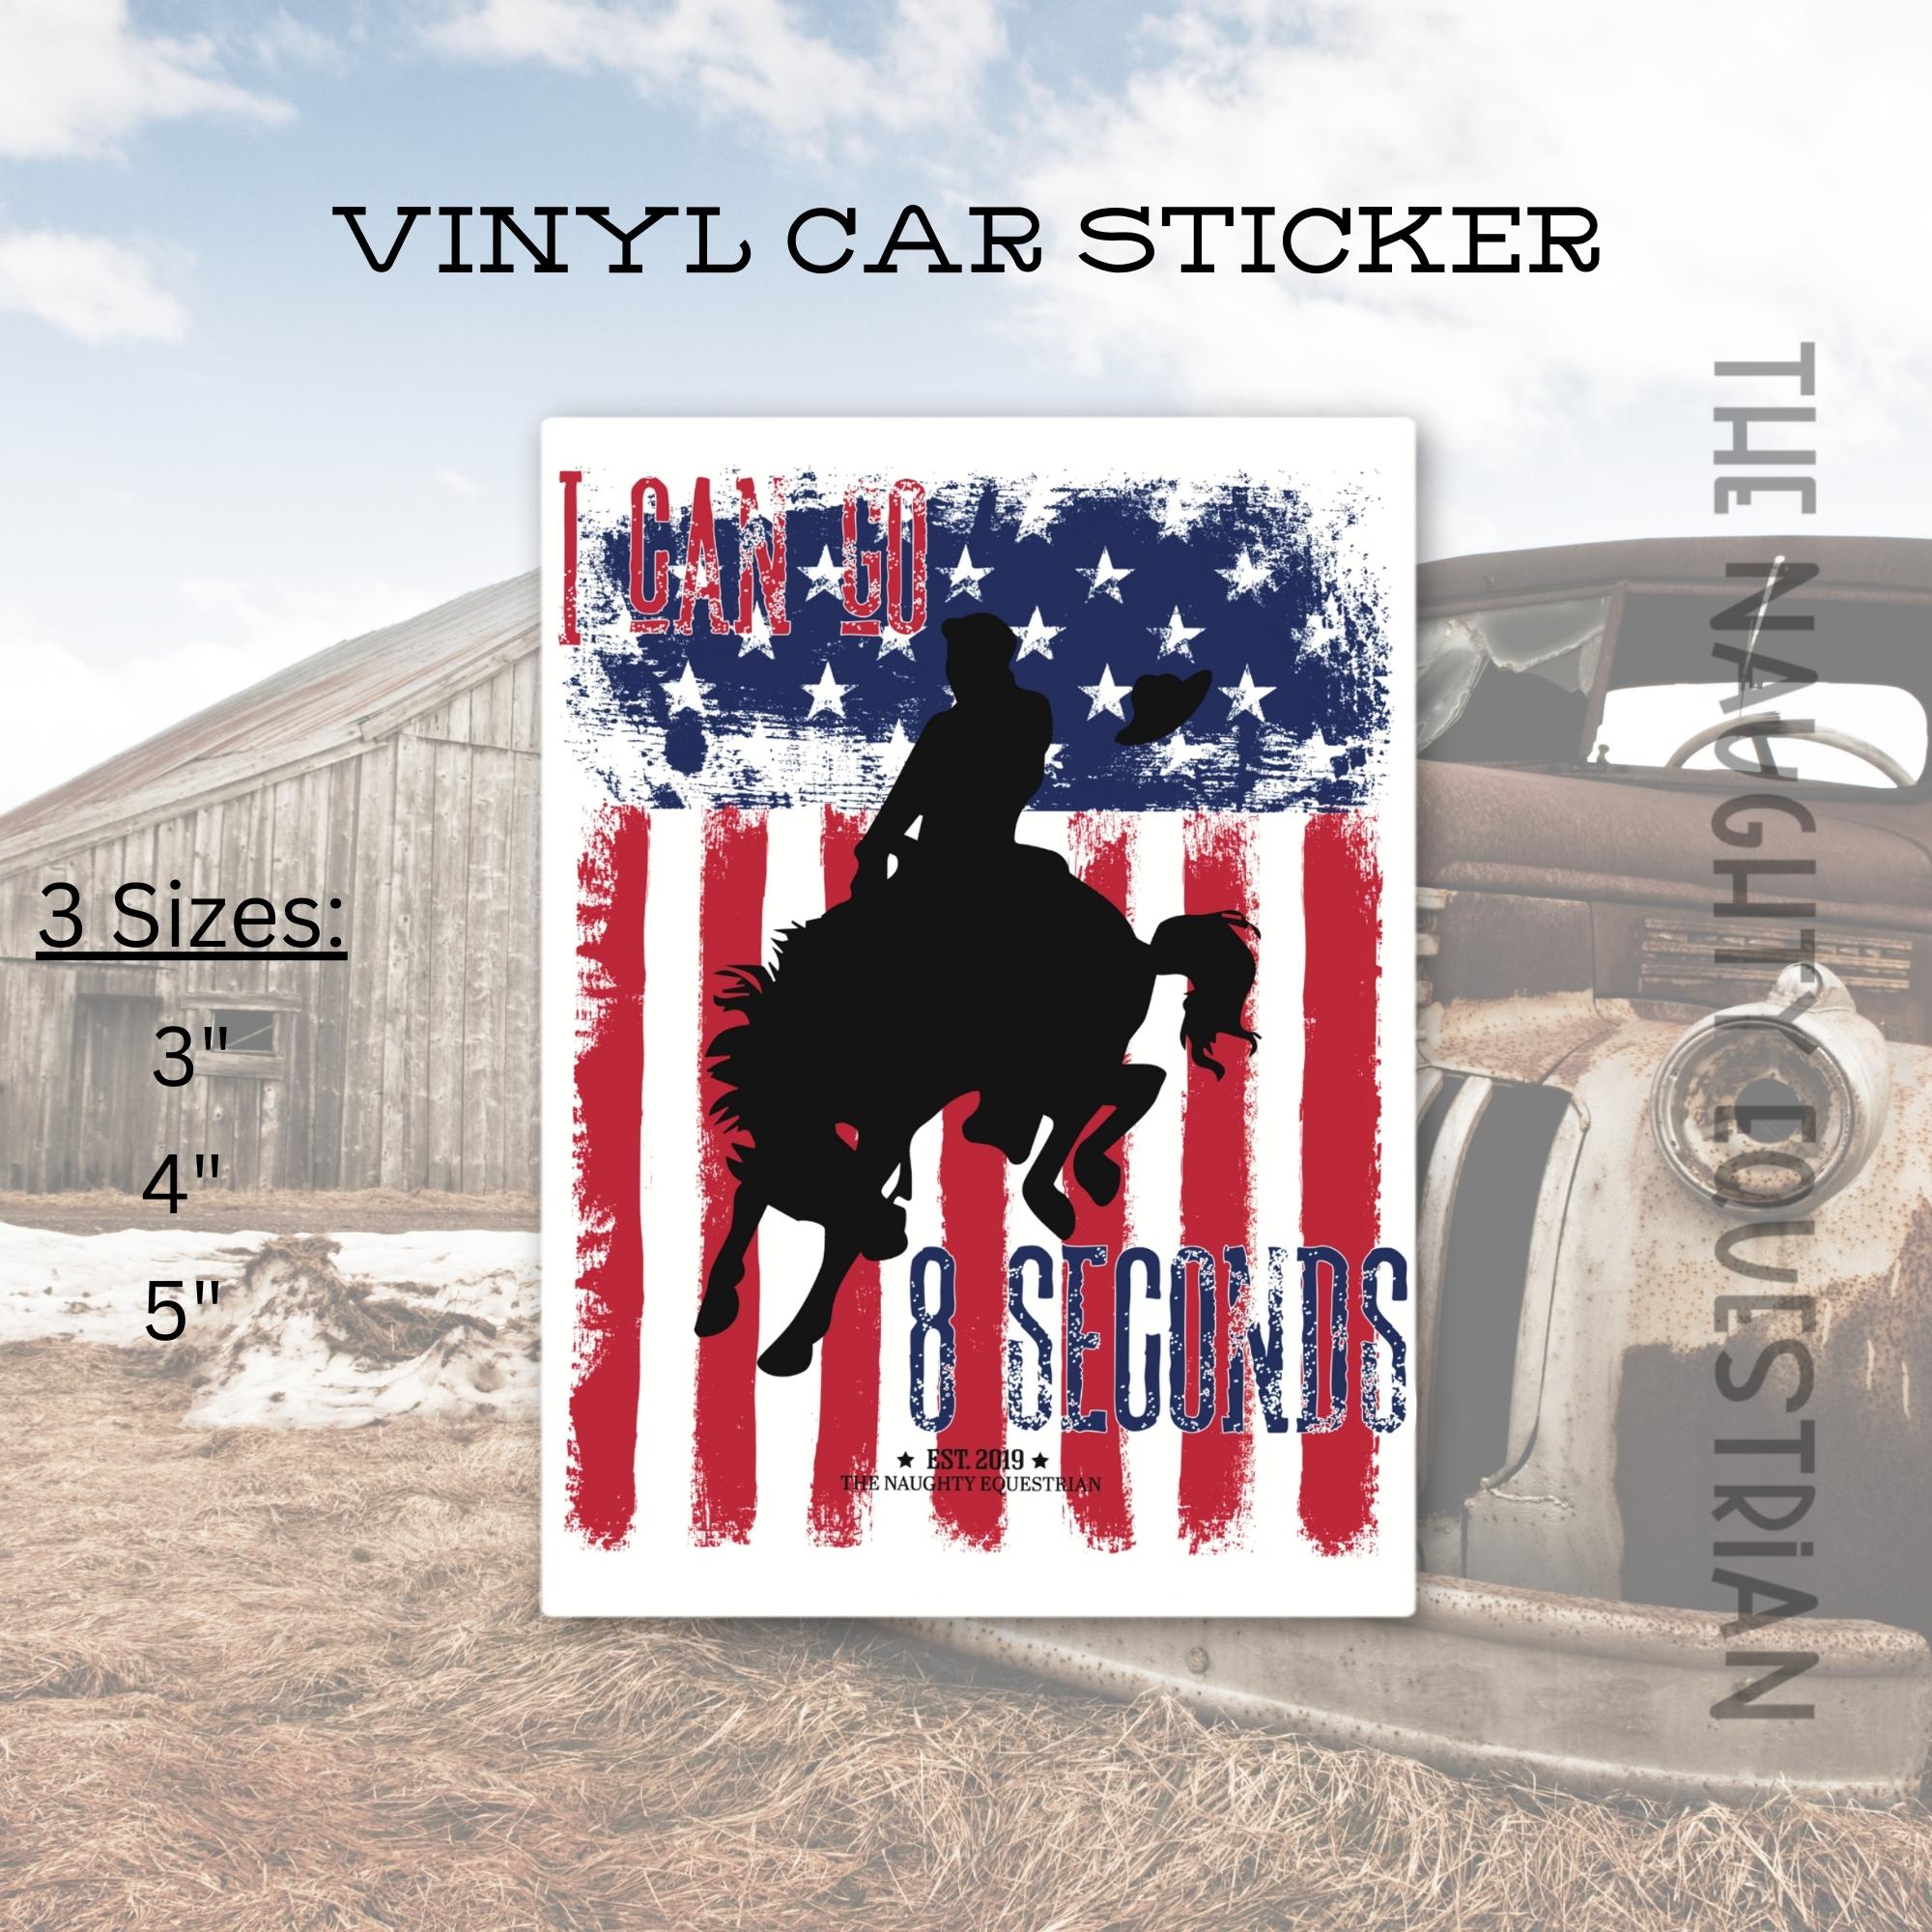 Cowboy I Can Go 8 Seconds Sticker, Vinyl Car Decal